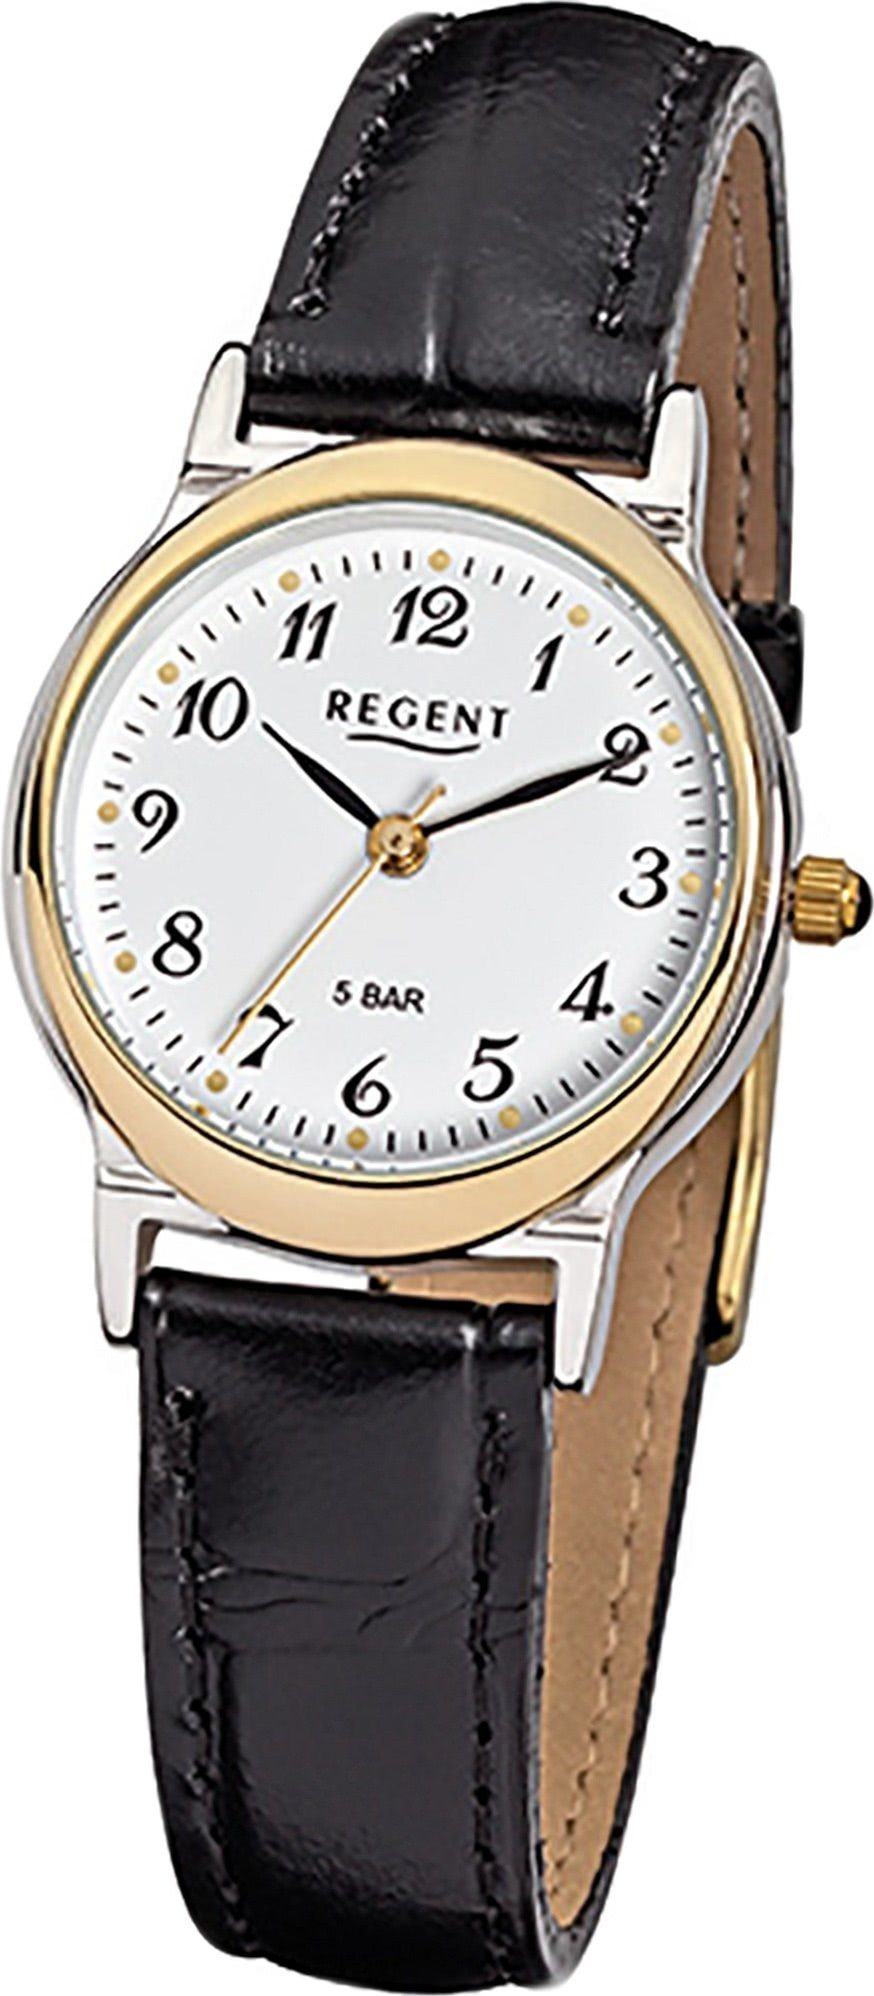 Regent klein F-014 Gehäuse, Uhr Quarzuhr, Damenuhr Lederarmband schwarz, Leder Regent rundes (ca. Damen 27mm) Quarzuhr